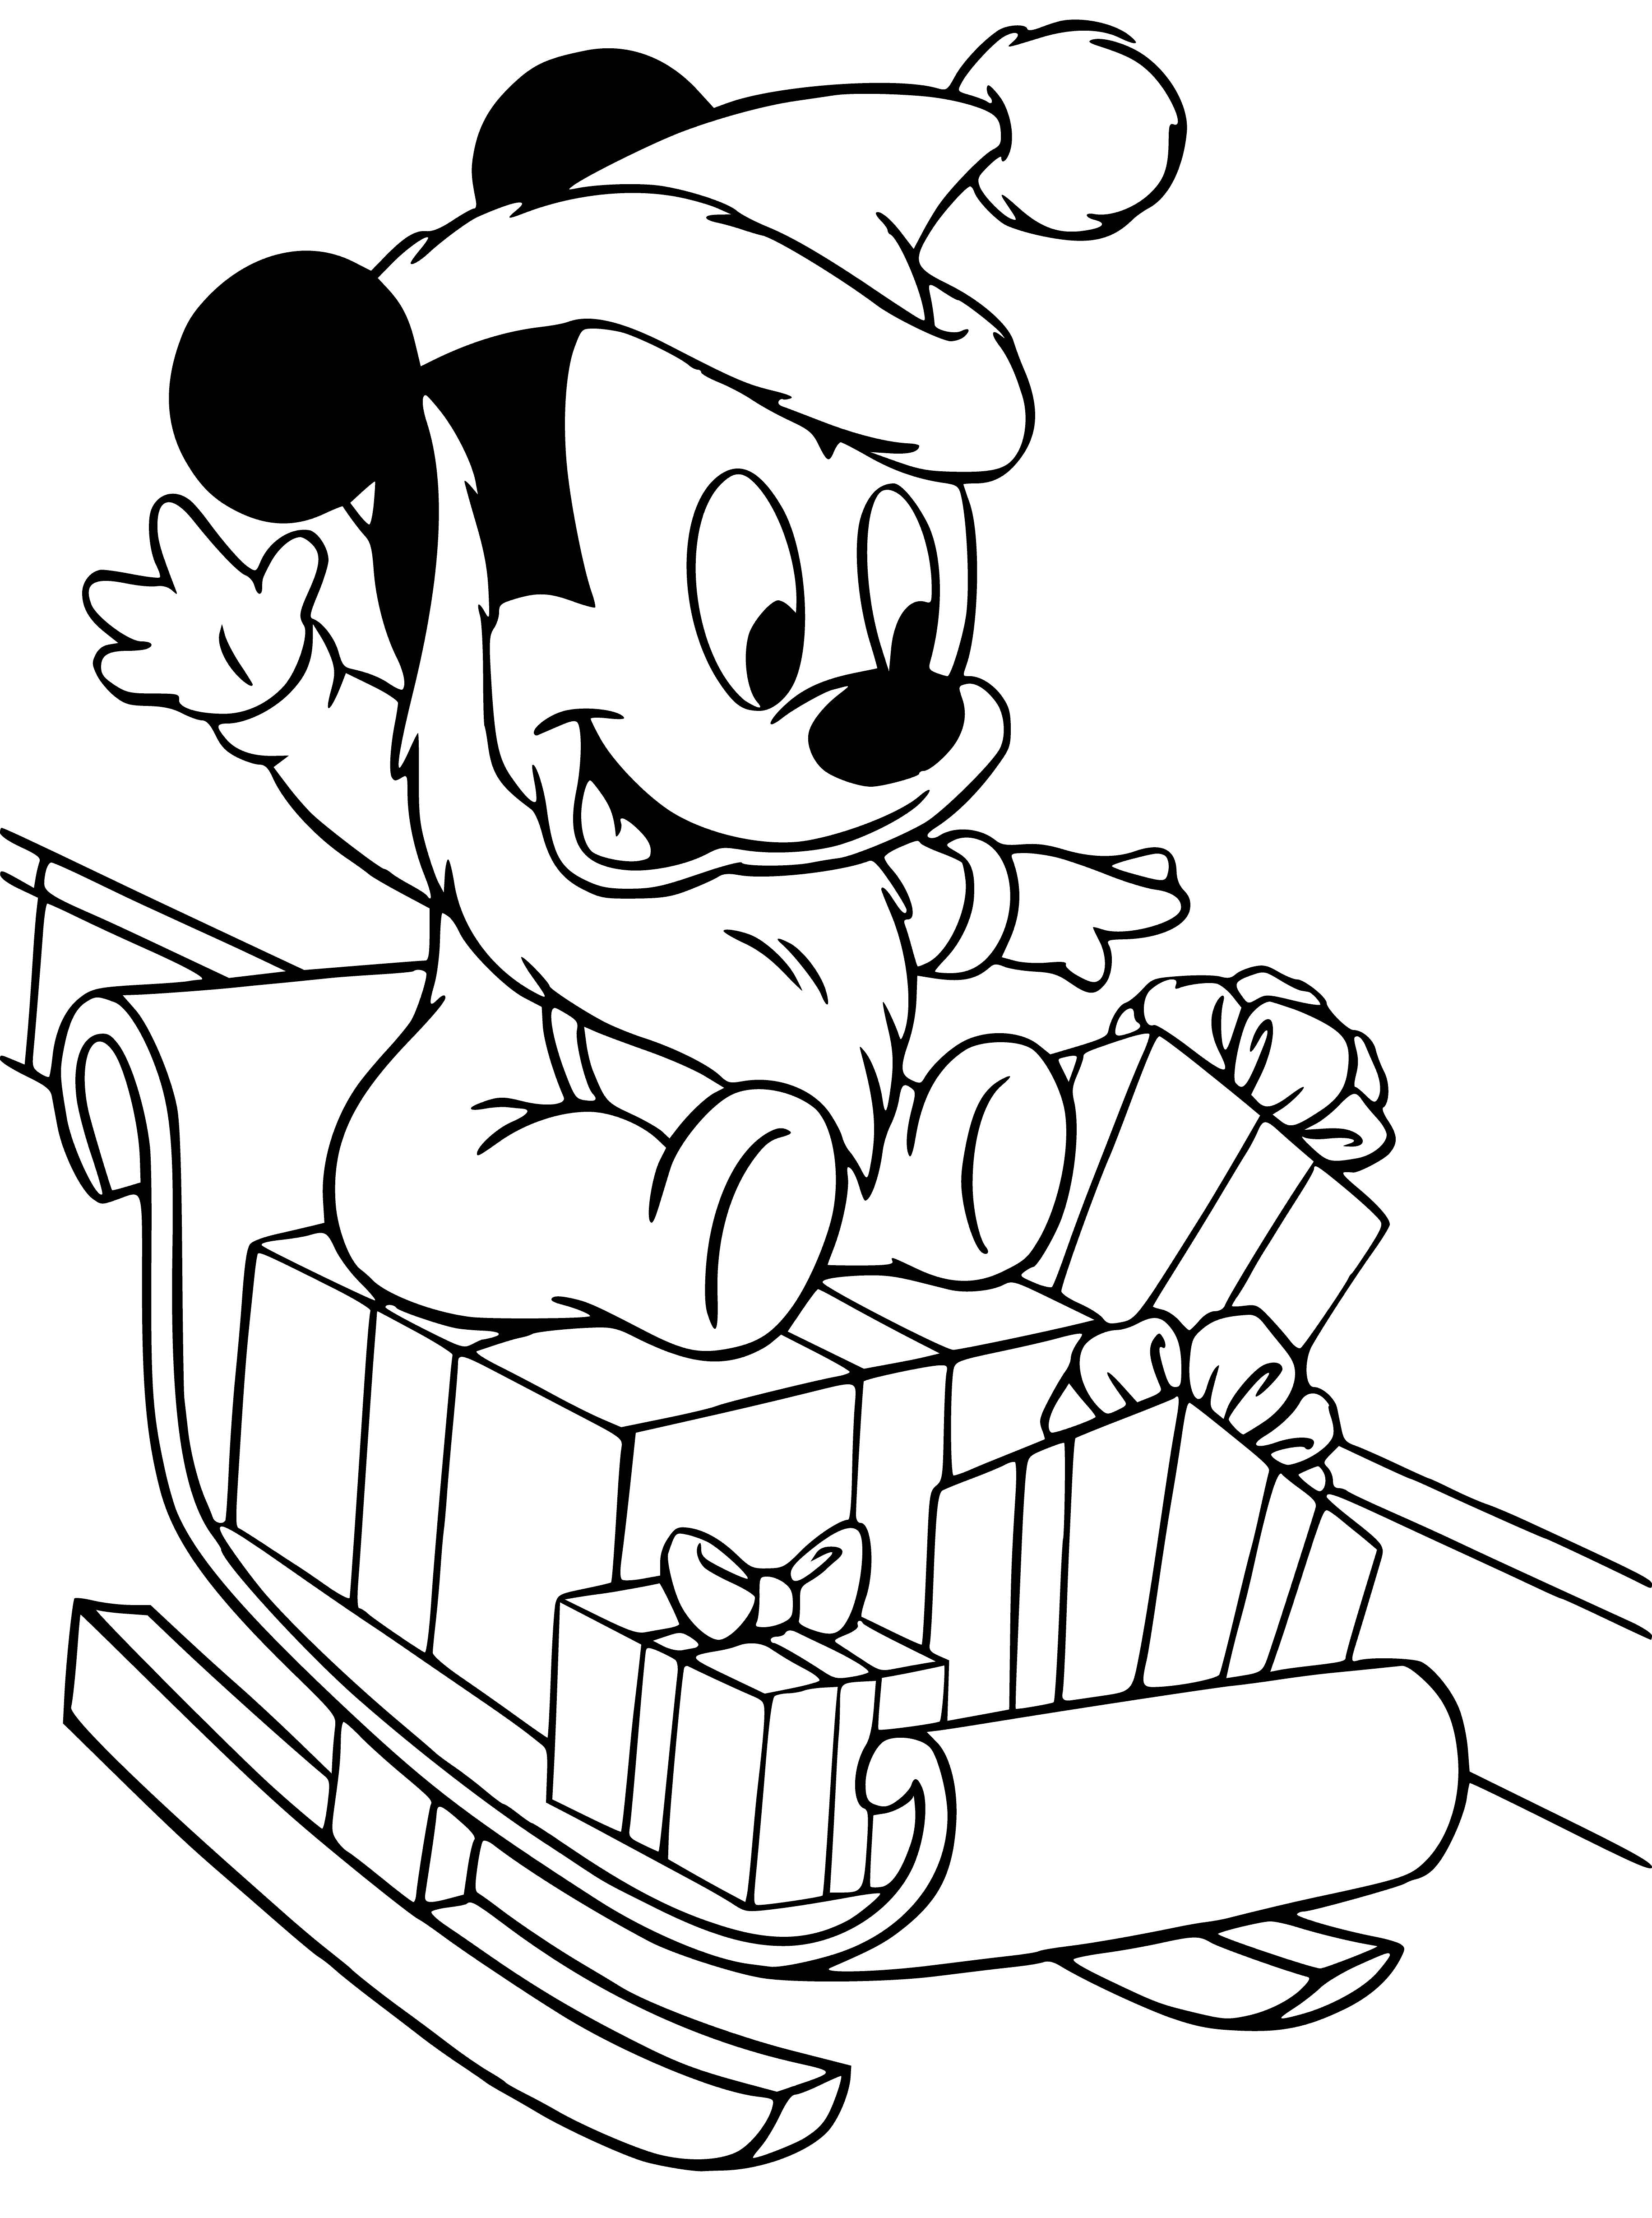 Mickey Mouse met cadeautjes kleurplaat